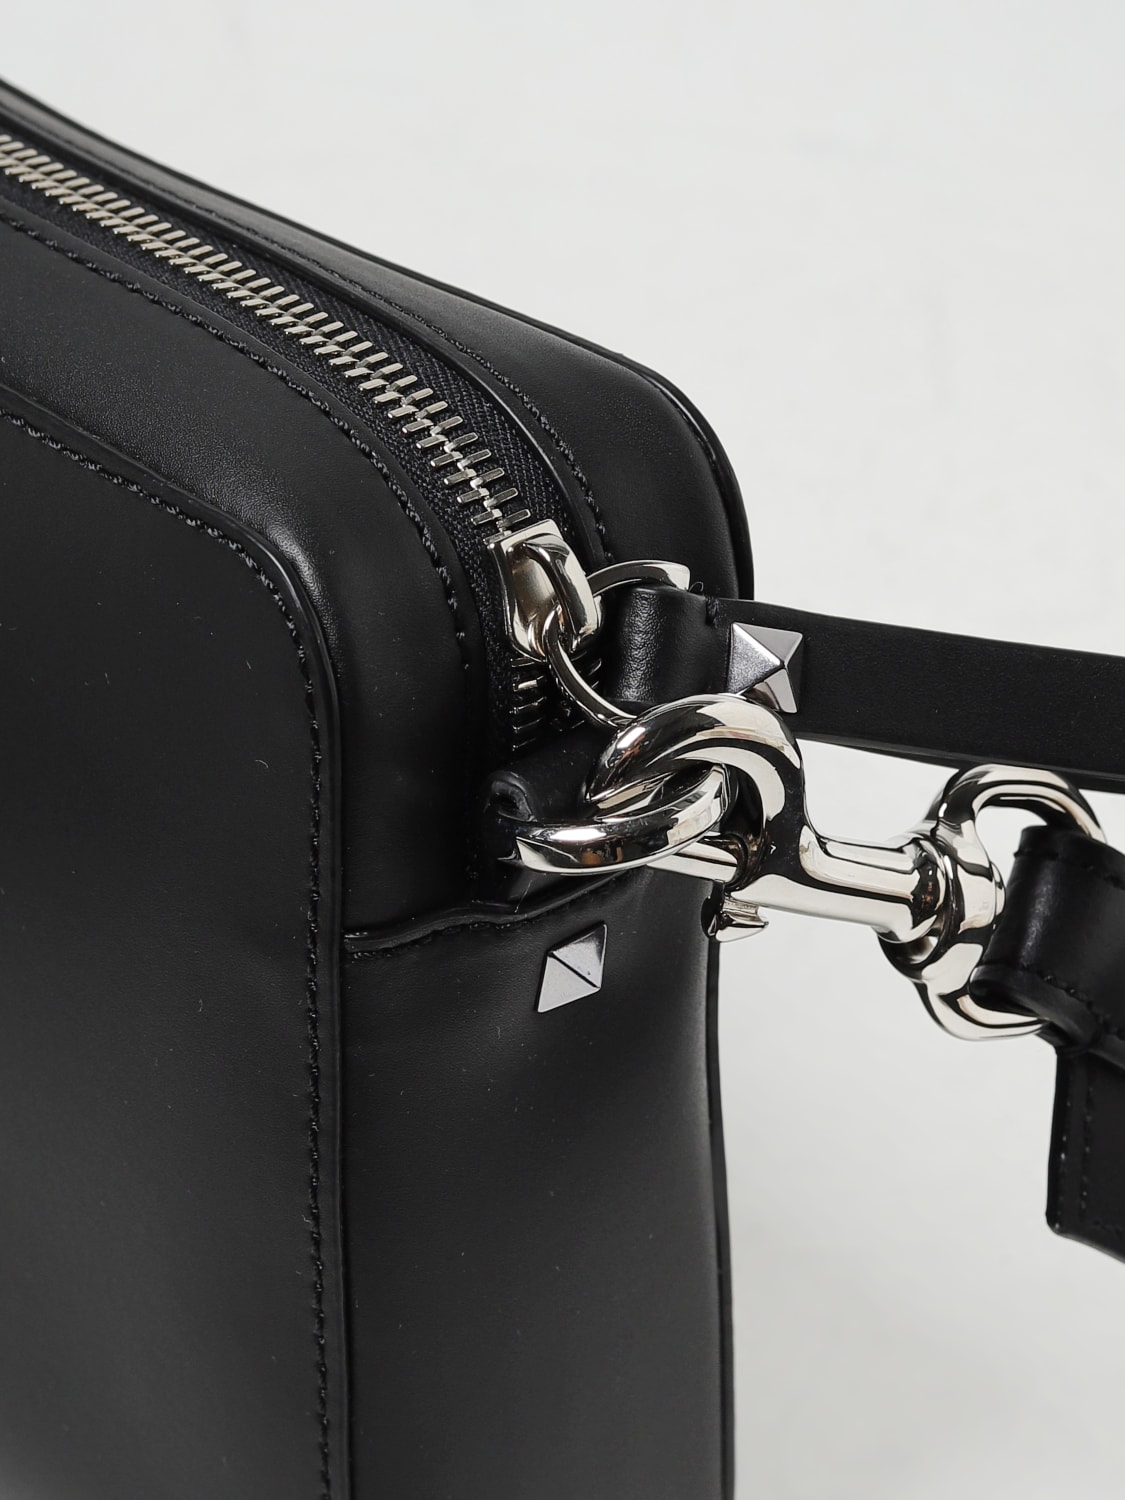 Valentino Garavani Small VLTN Leather Shoulder Bag - Black for Men